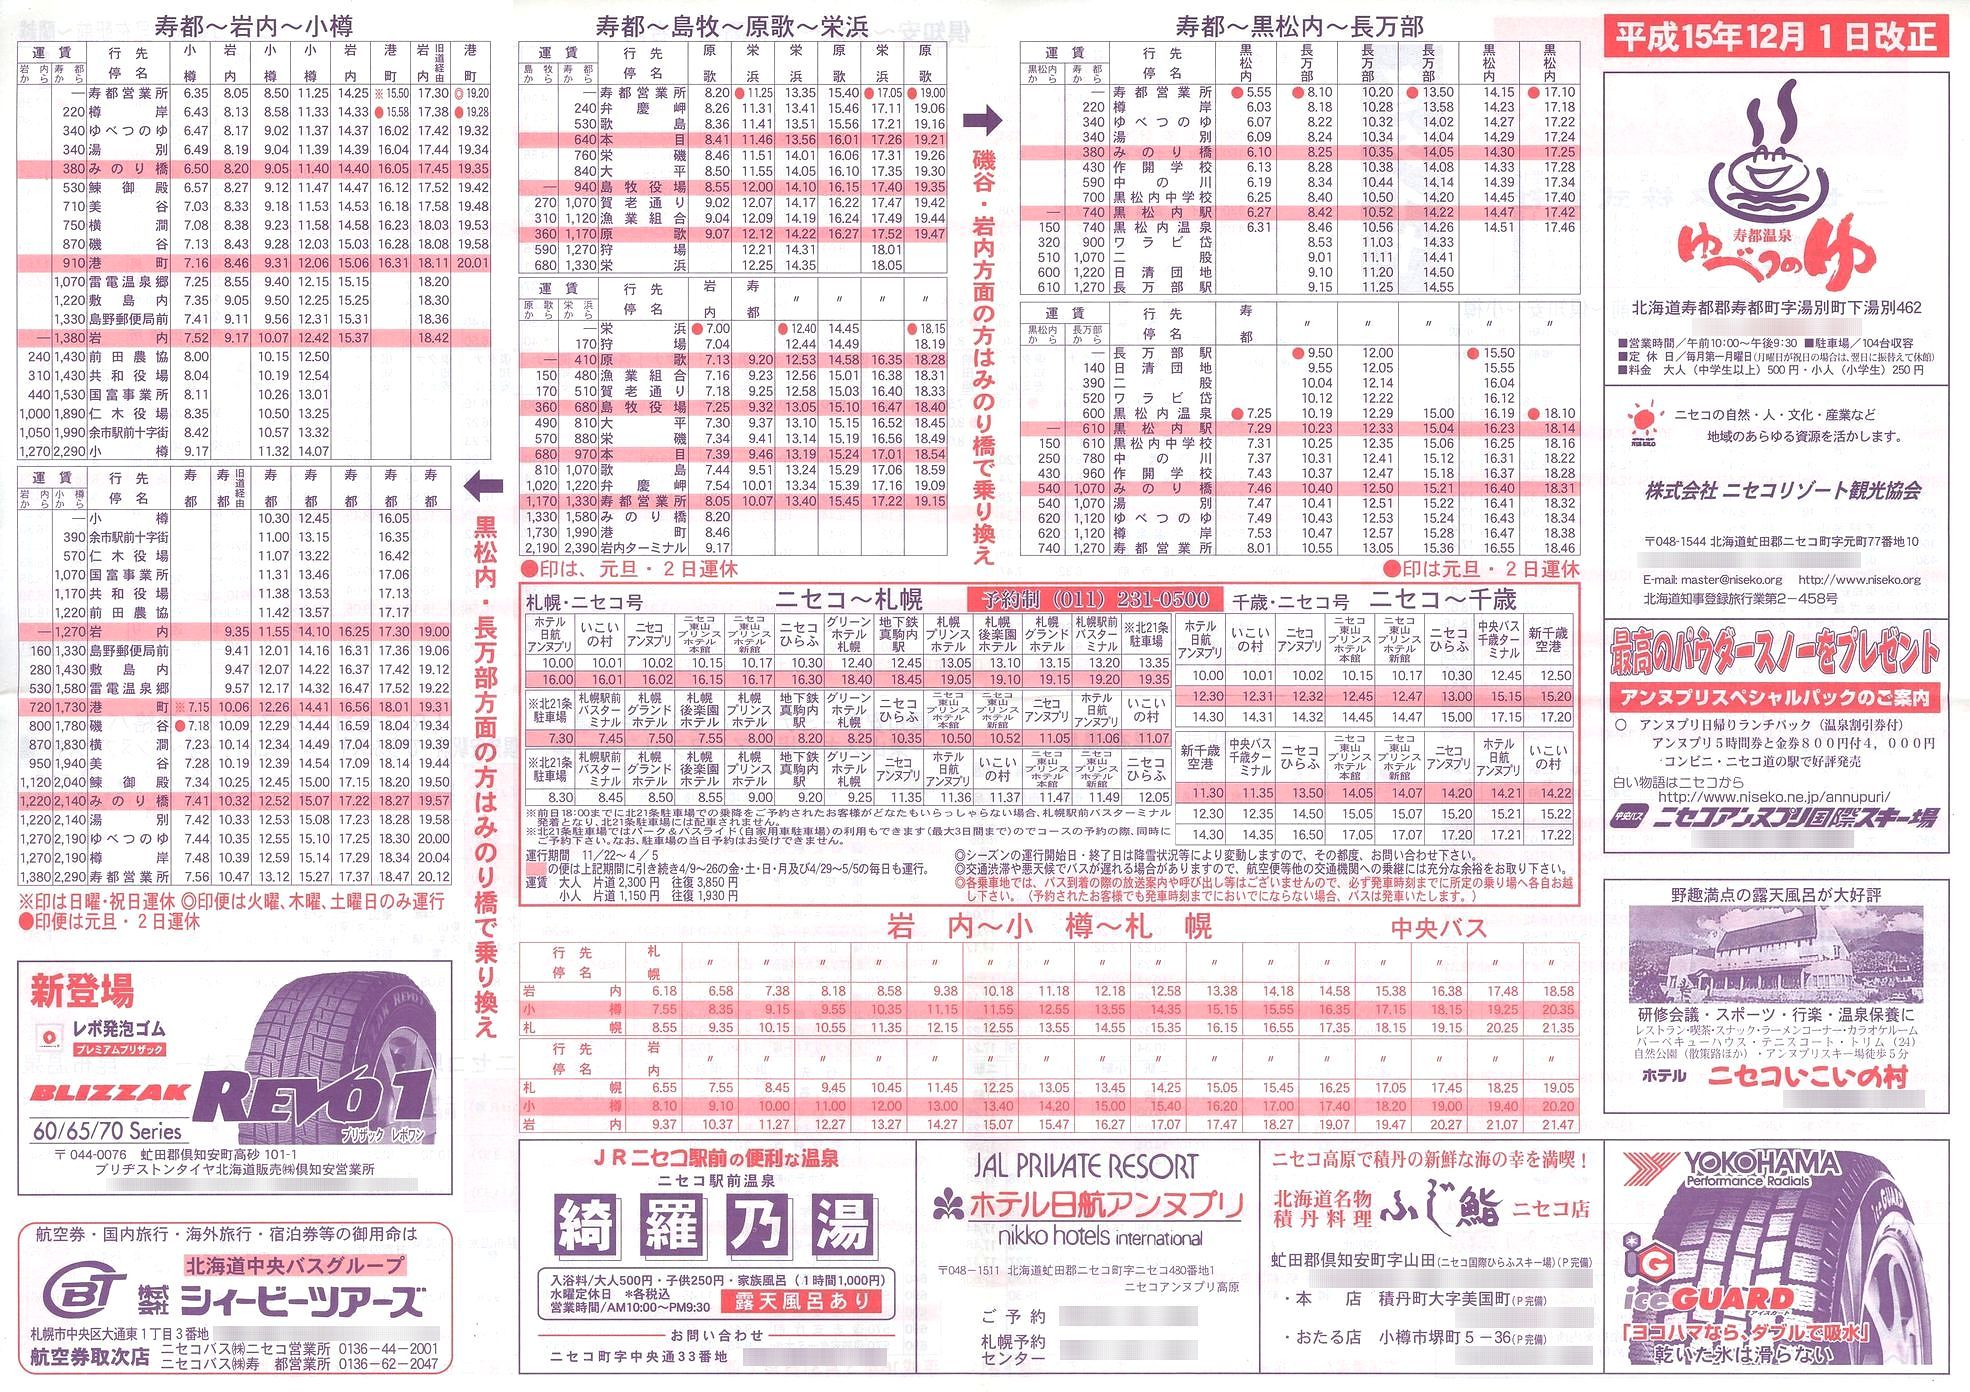 2003-12-01改正_ニセコバス_時刻表裏面